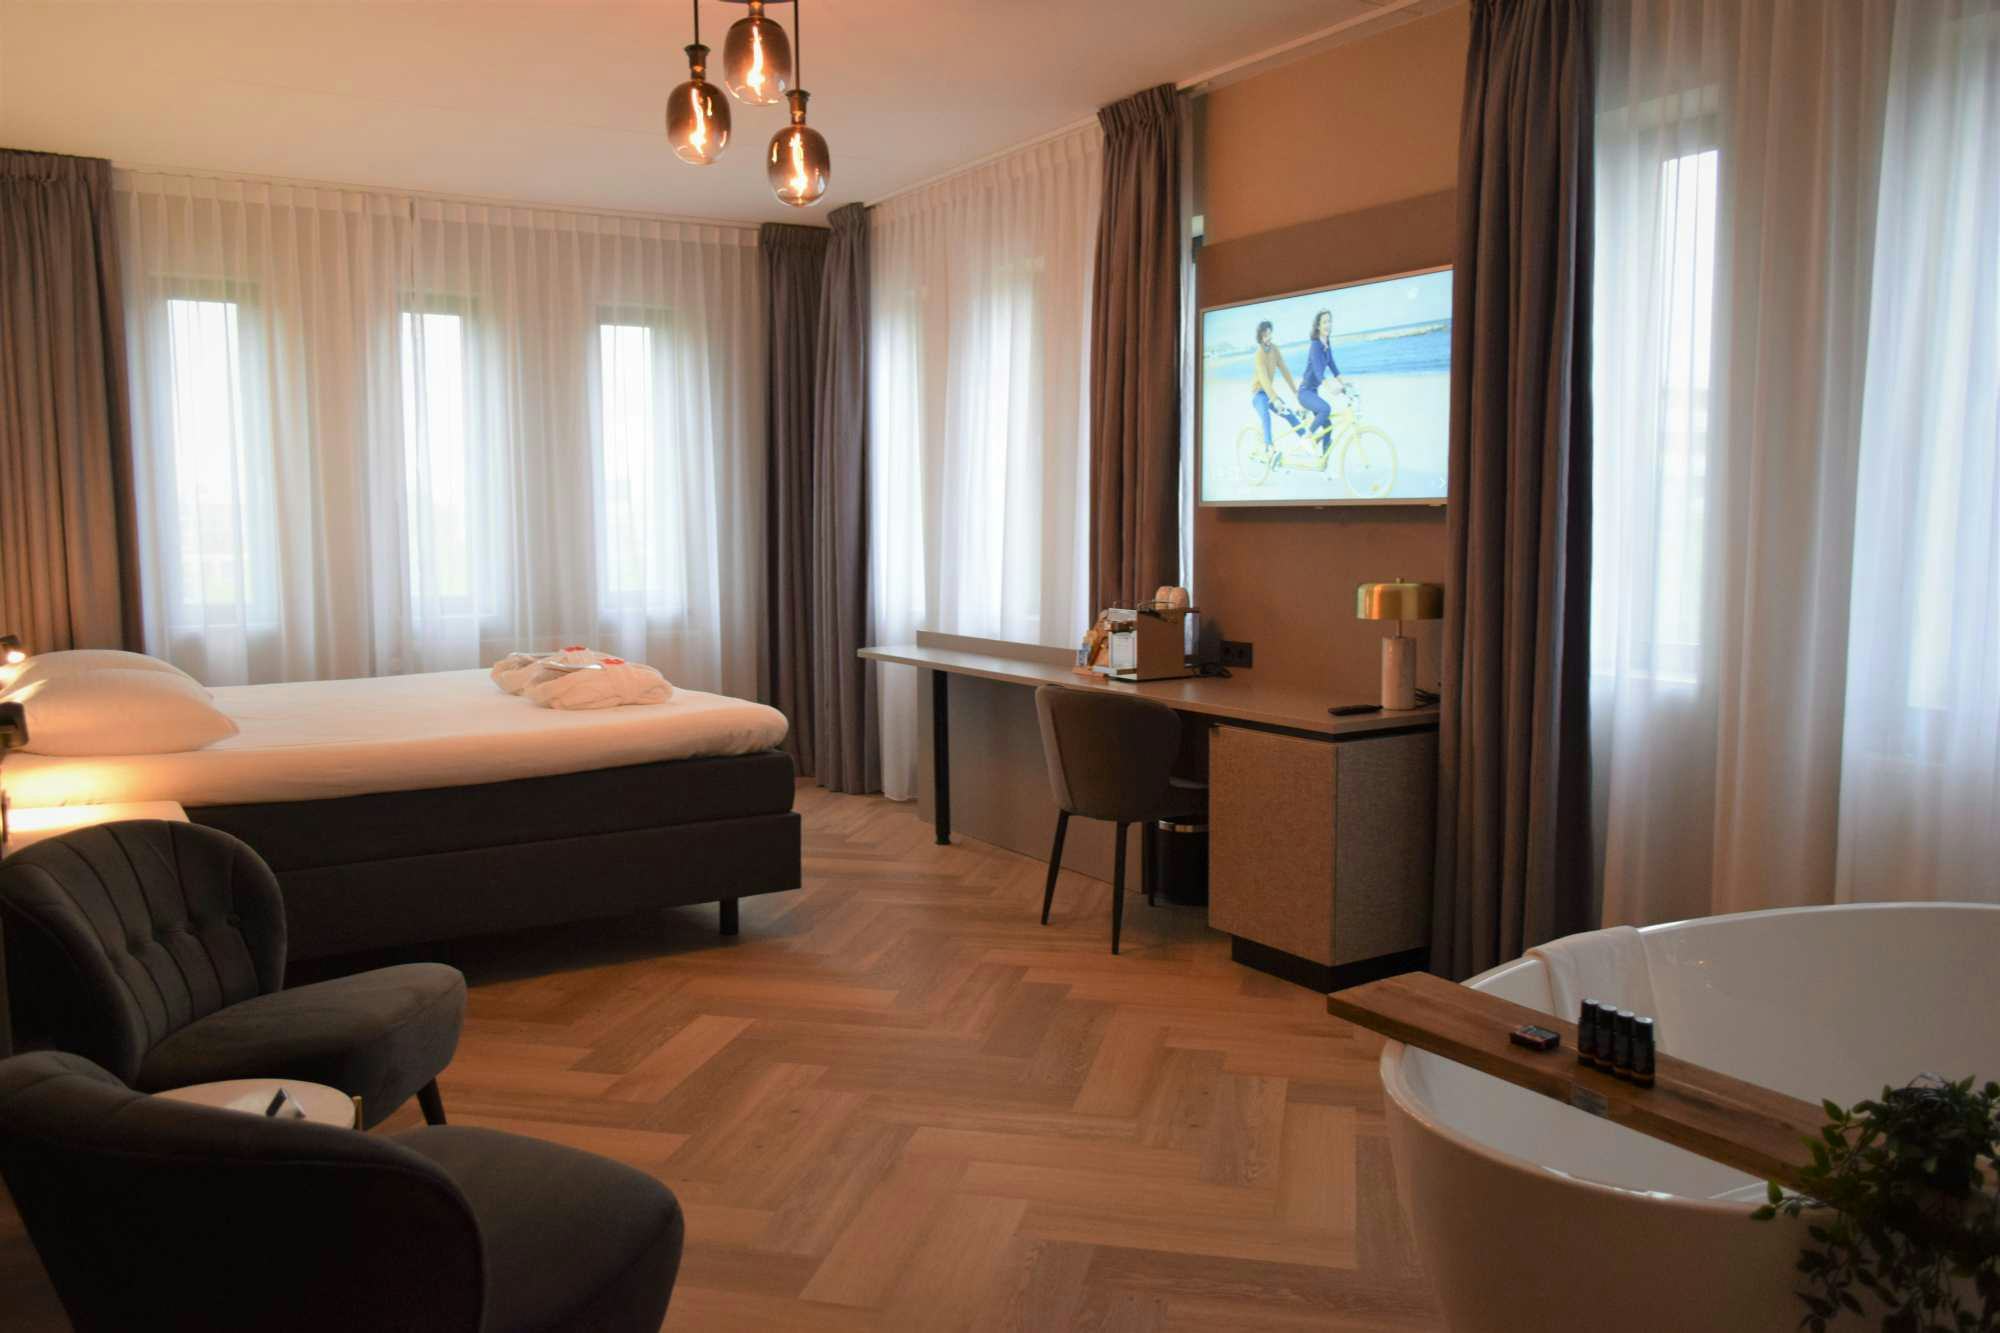 Golden Tulip Hotel Alkmaar ondergaat grootschalige renovatie